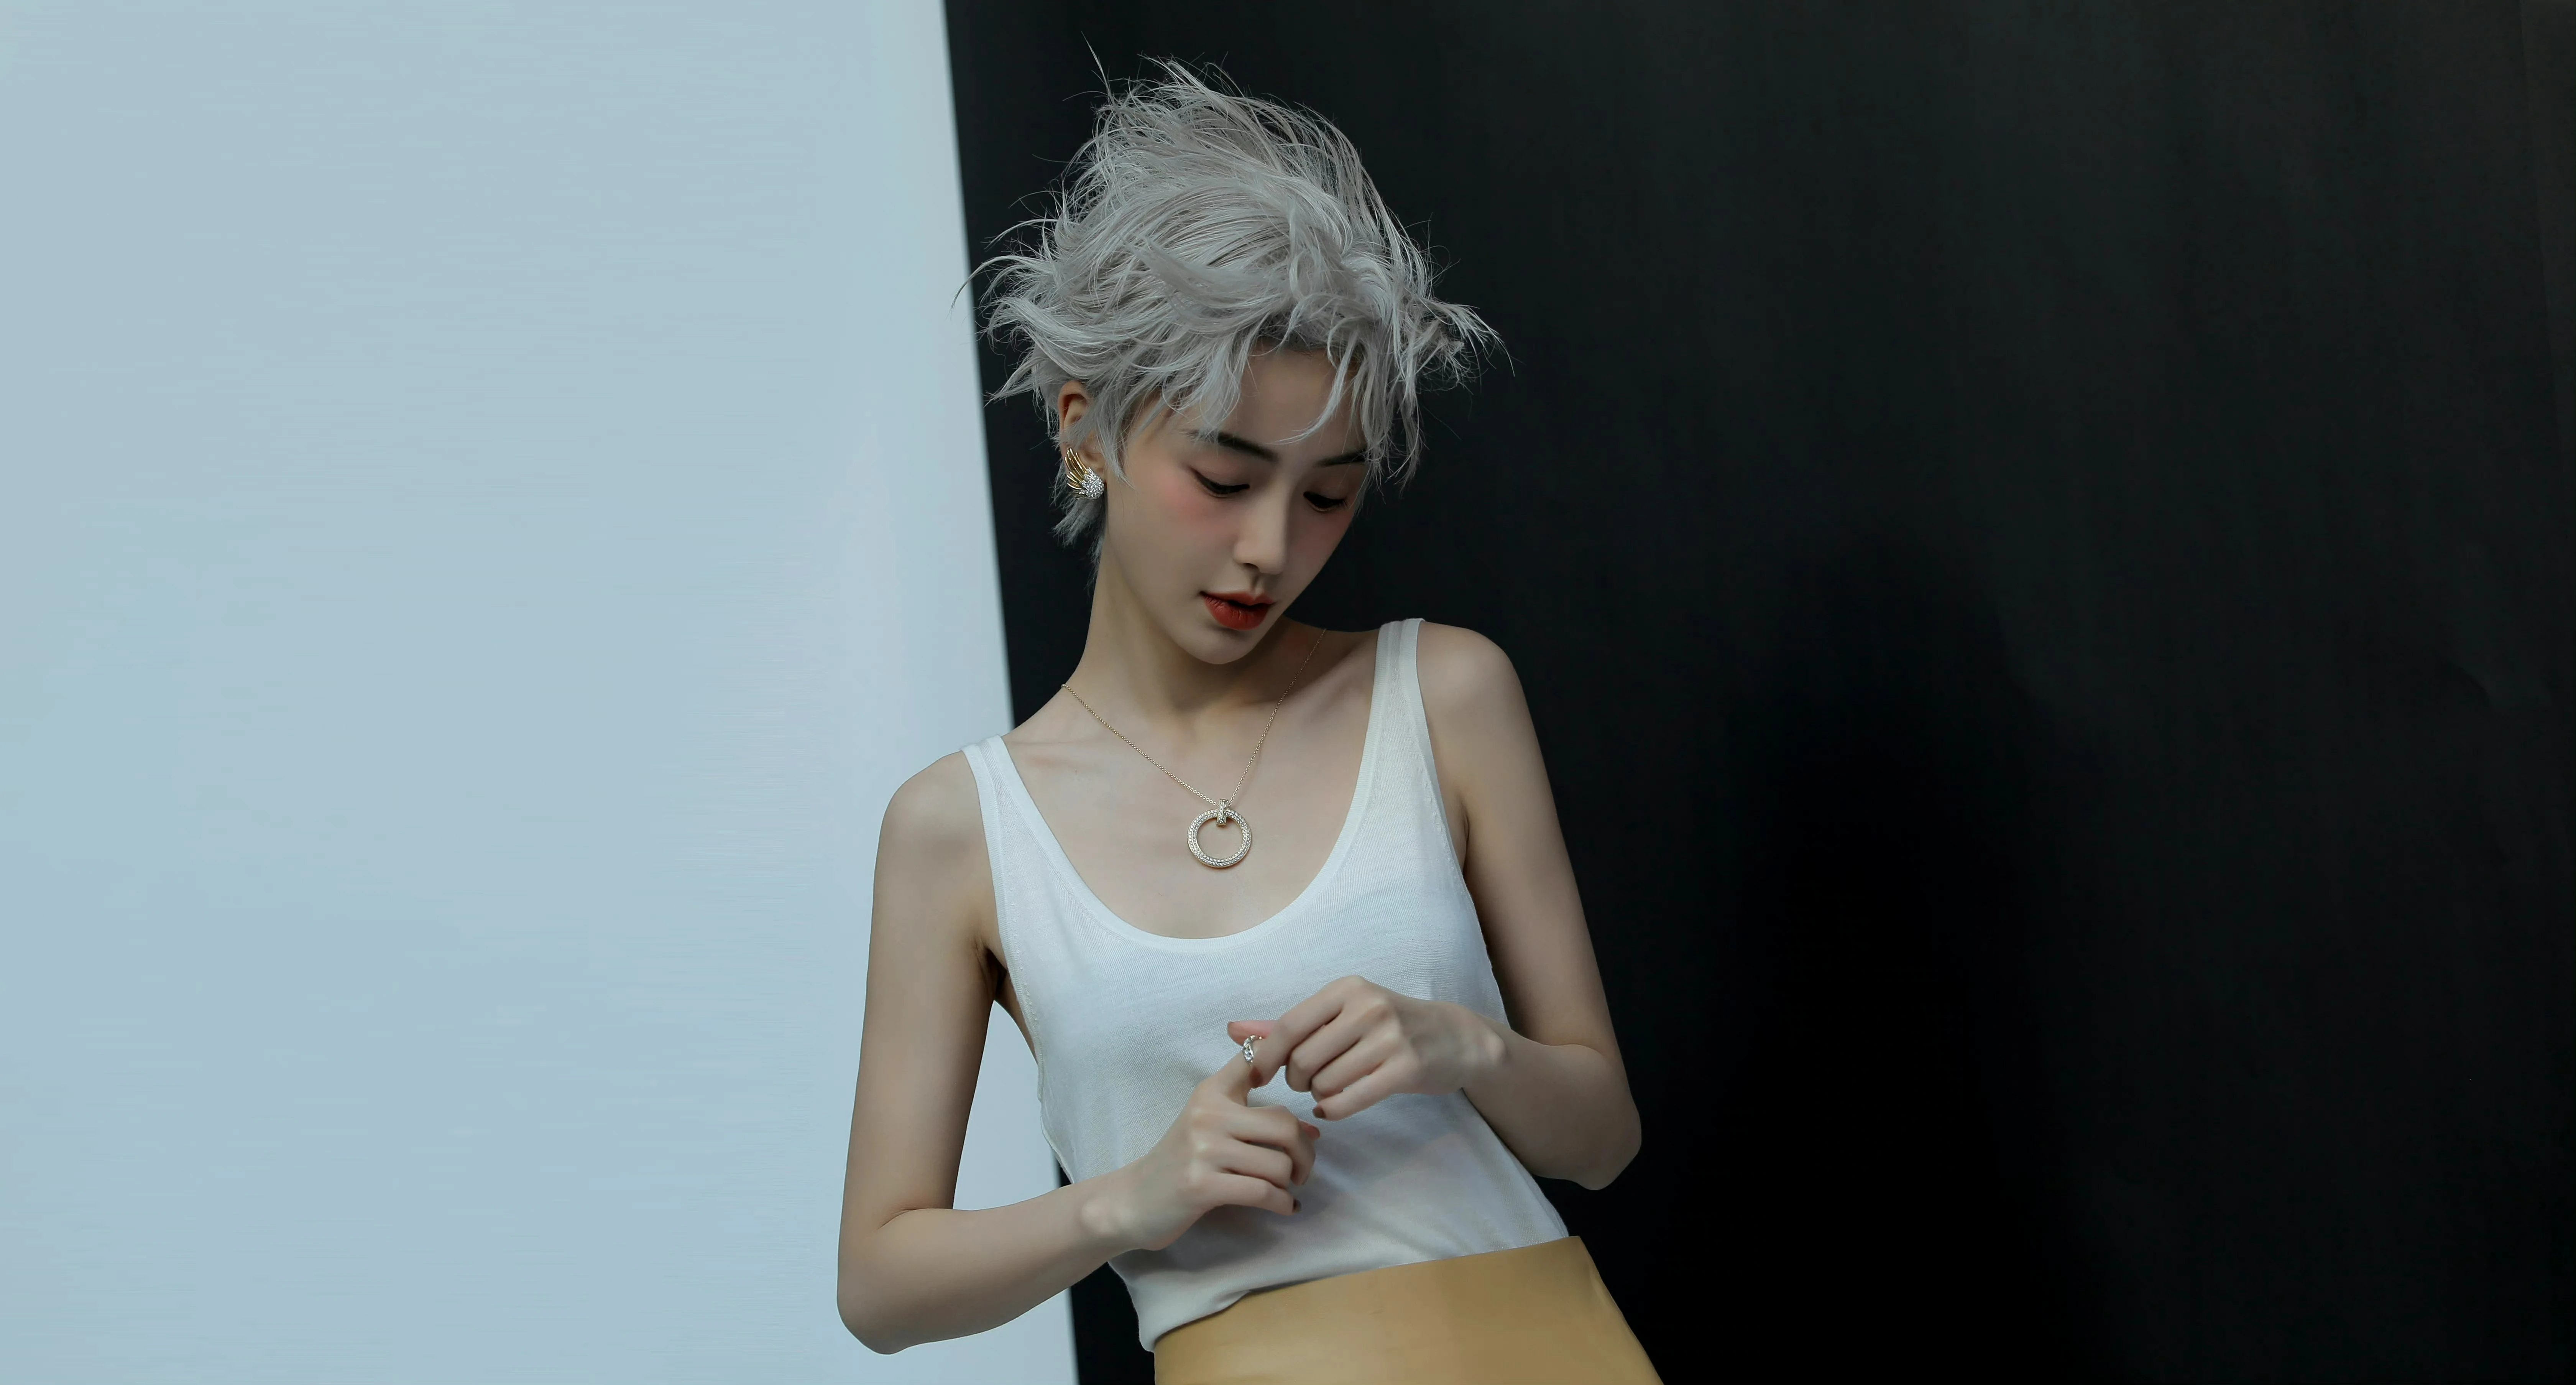 杨颖（Angelababy）银色短发造型大片酷飒前卫 妆容精致撕漫感满满,5